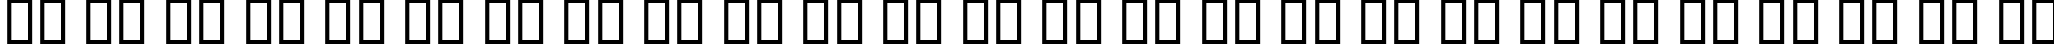 Пример написания английского алфавита шрифтом B Farnaz